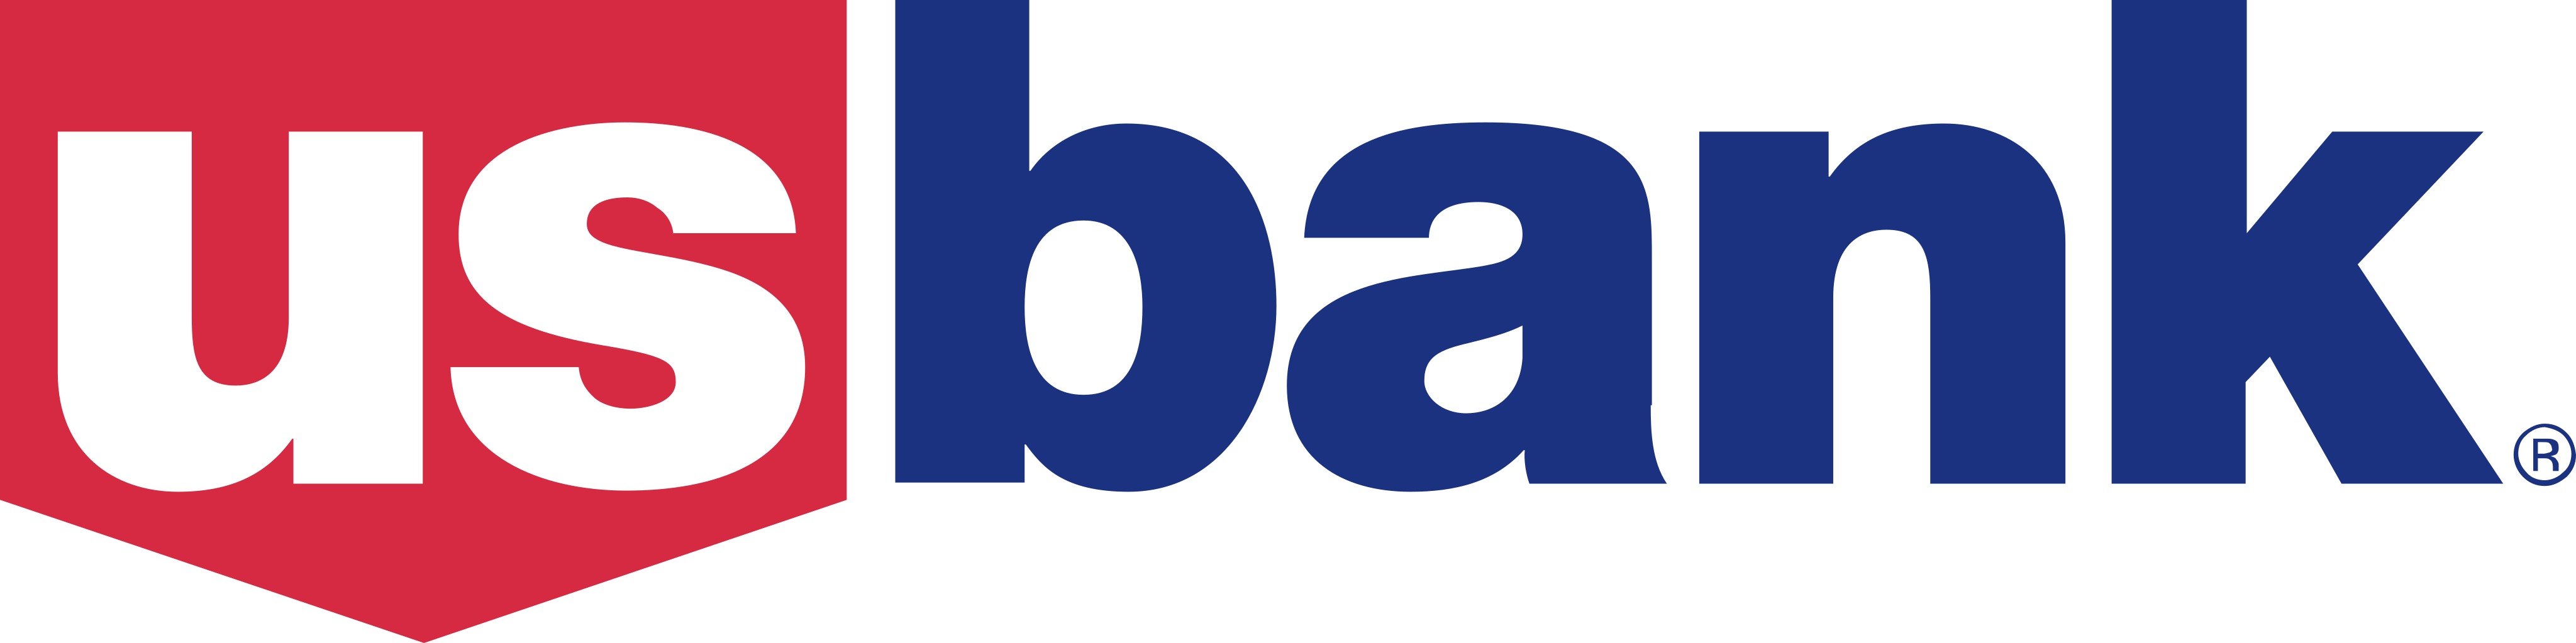 US Bank Logo - PNG and Vector - Logo Download